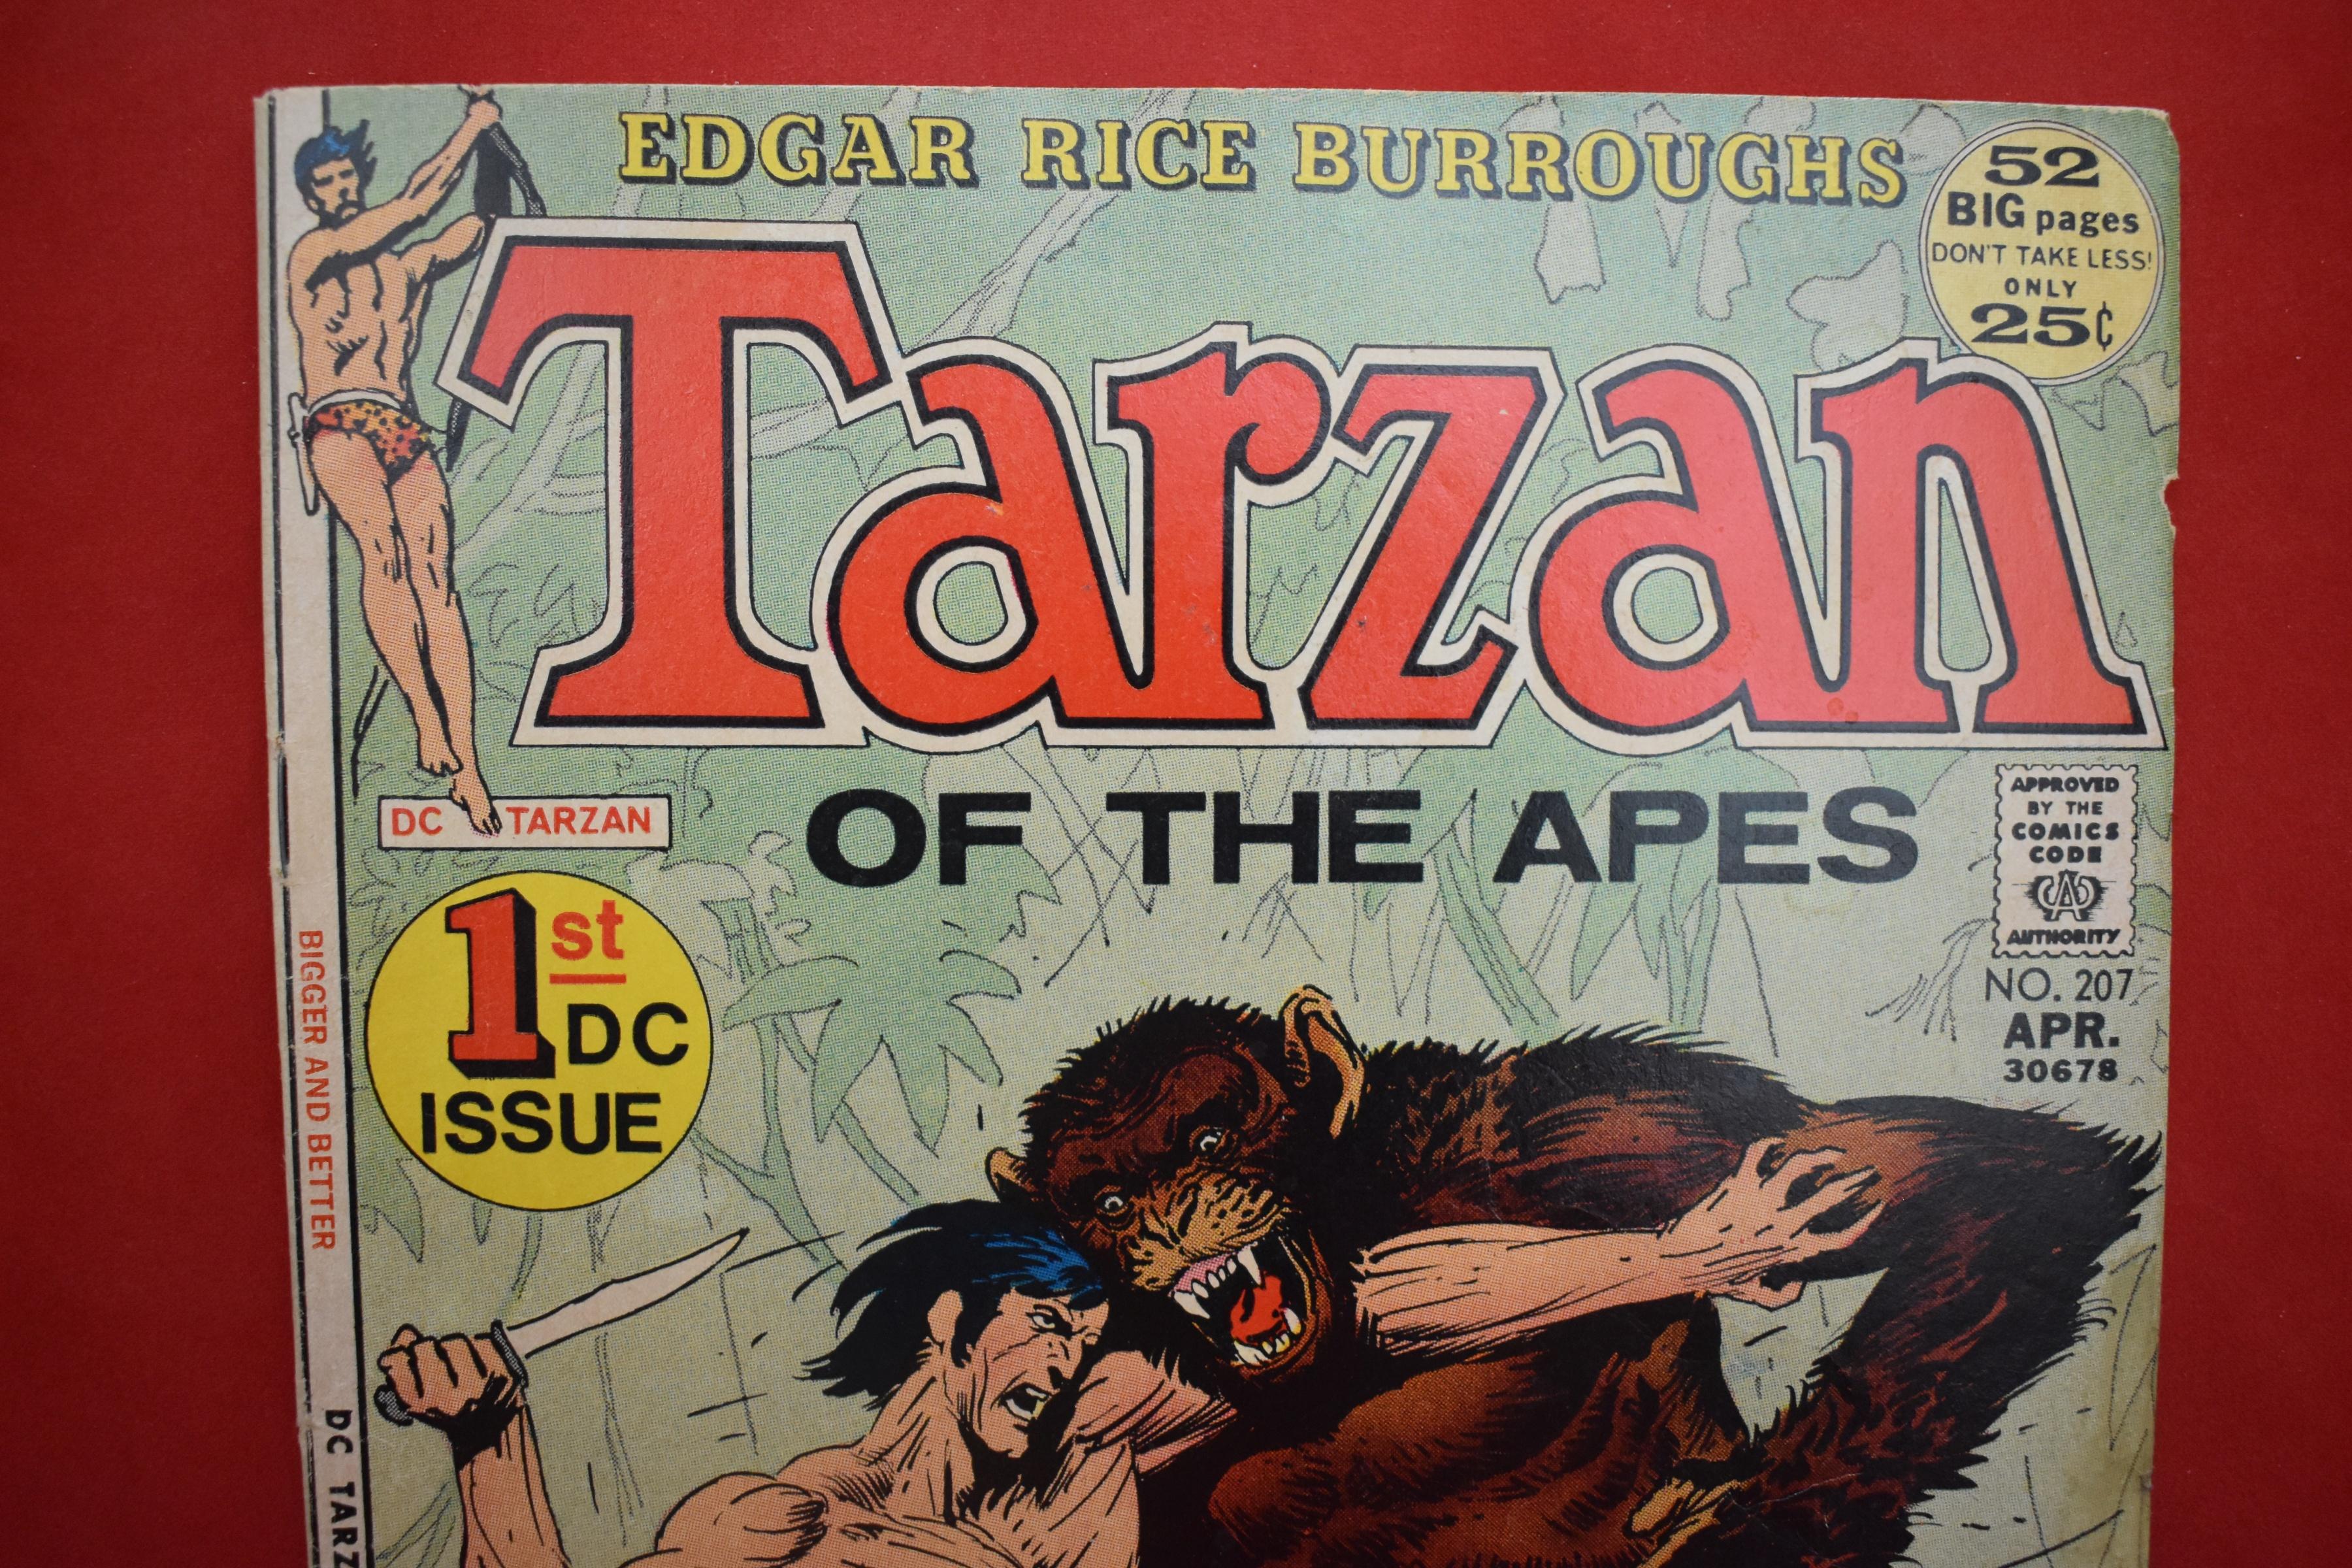 TARZAN #207 | KEY 1ST DC TARZAN ISSUE, ORIGIN OF TARZAN, ORIGIN OF JOHN CARTER! | PRETTY NICE!